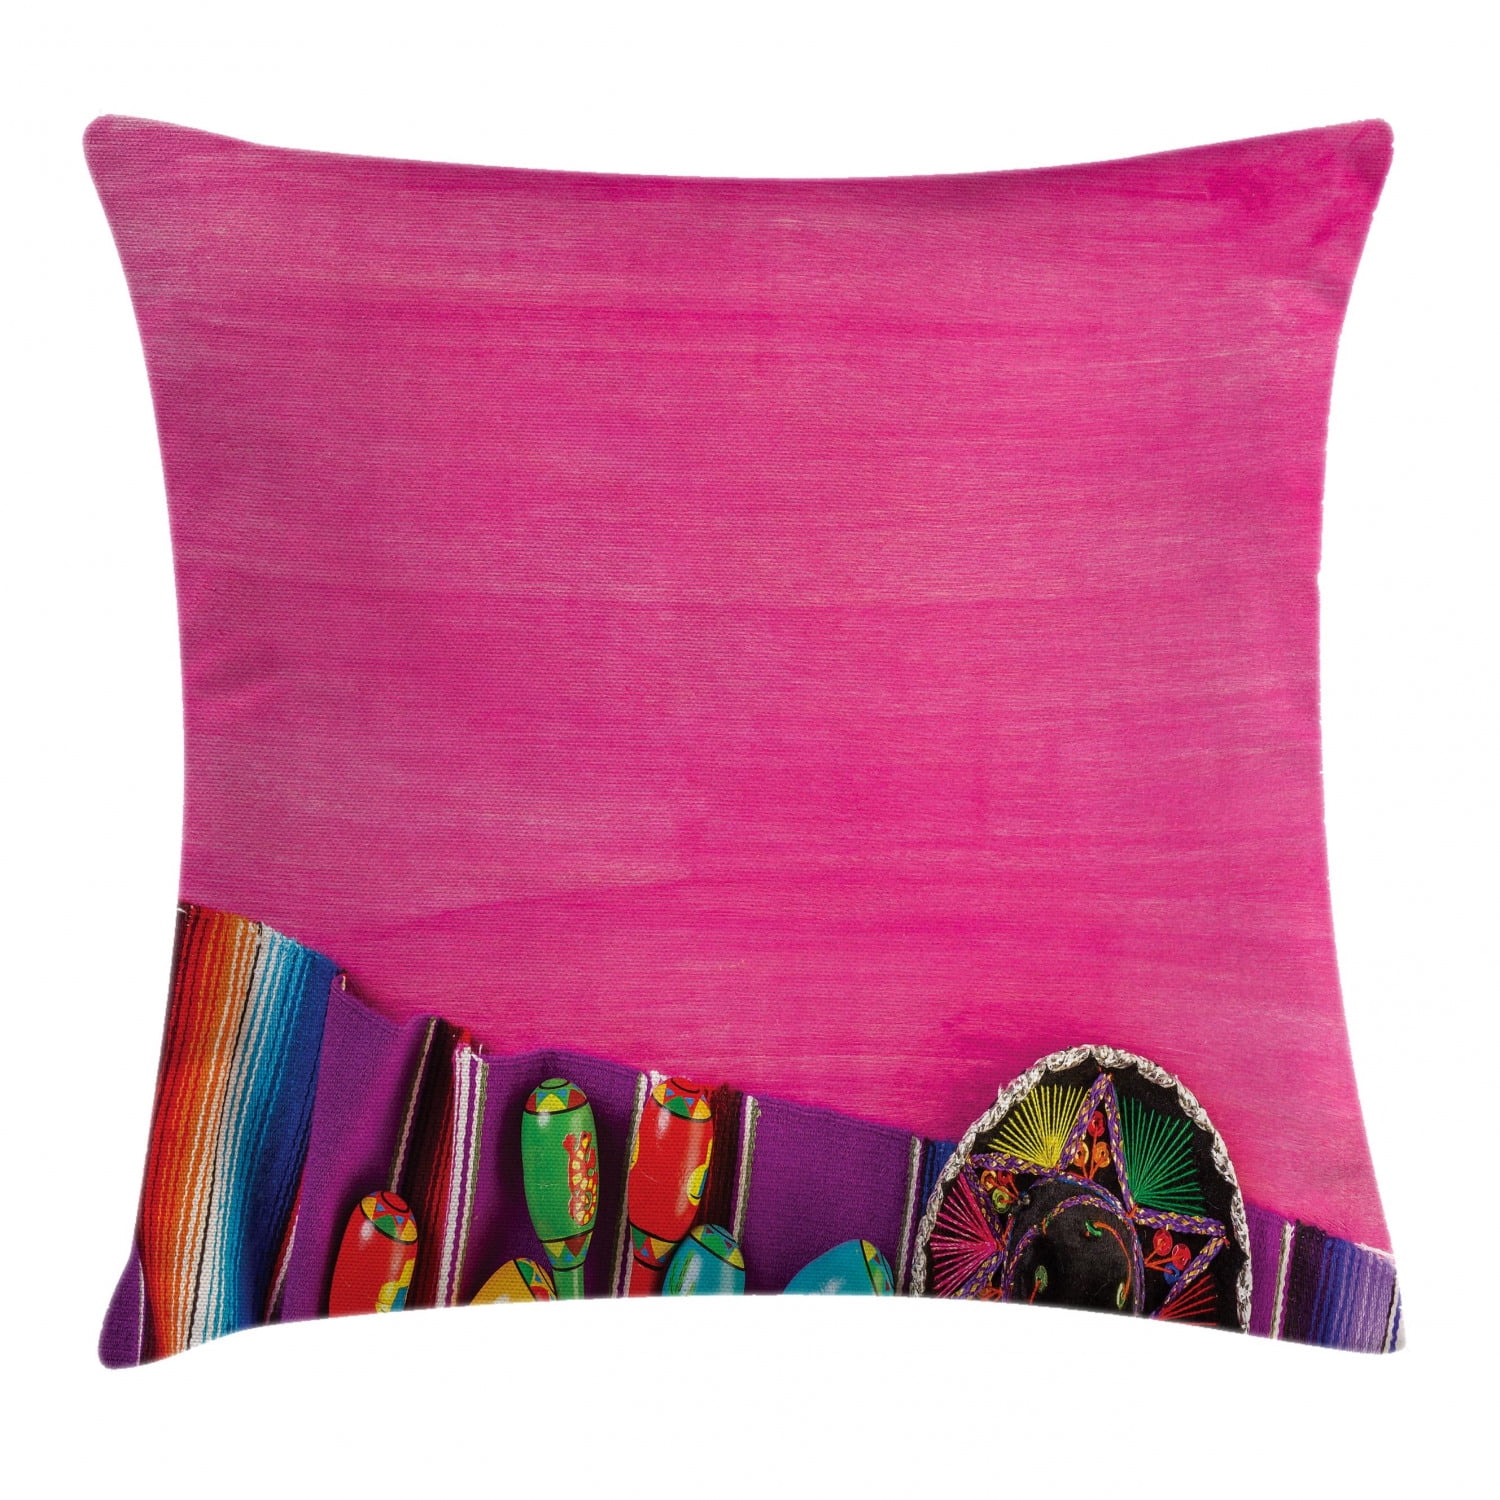 US SELLER 4pcs couch throw pillows cushion covers Mexican folk art print 